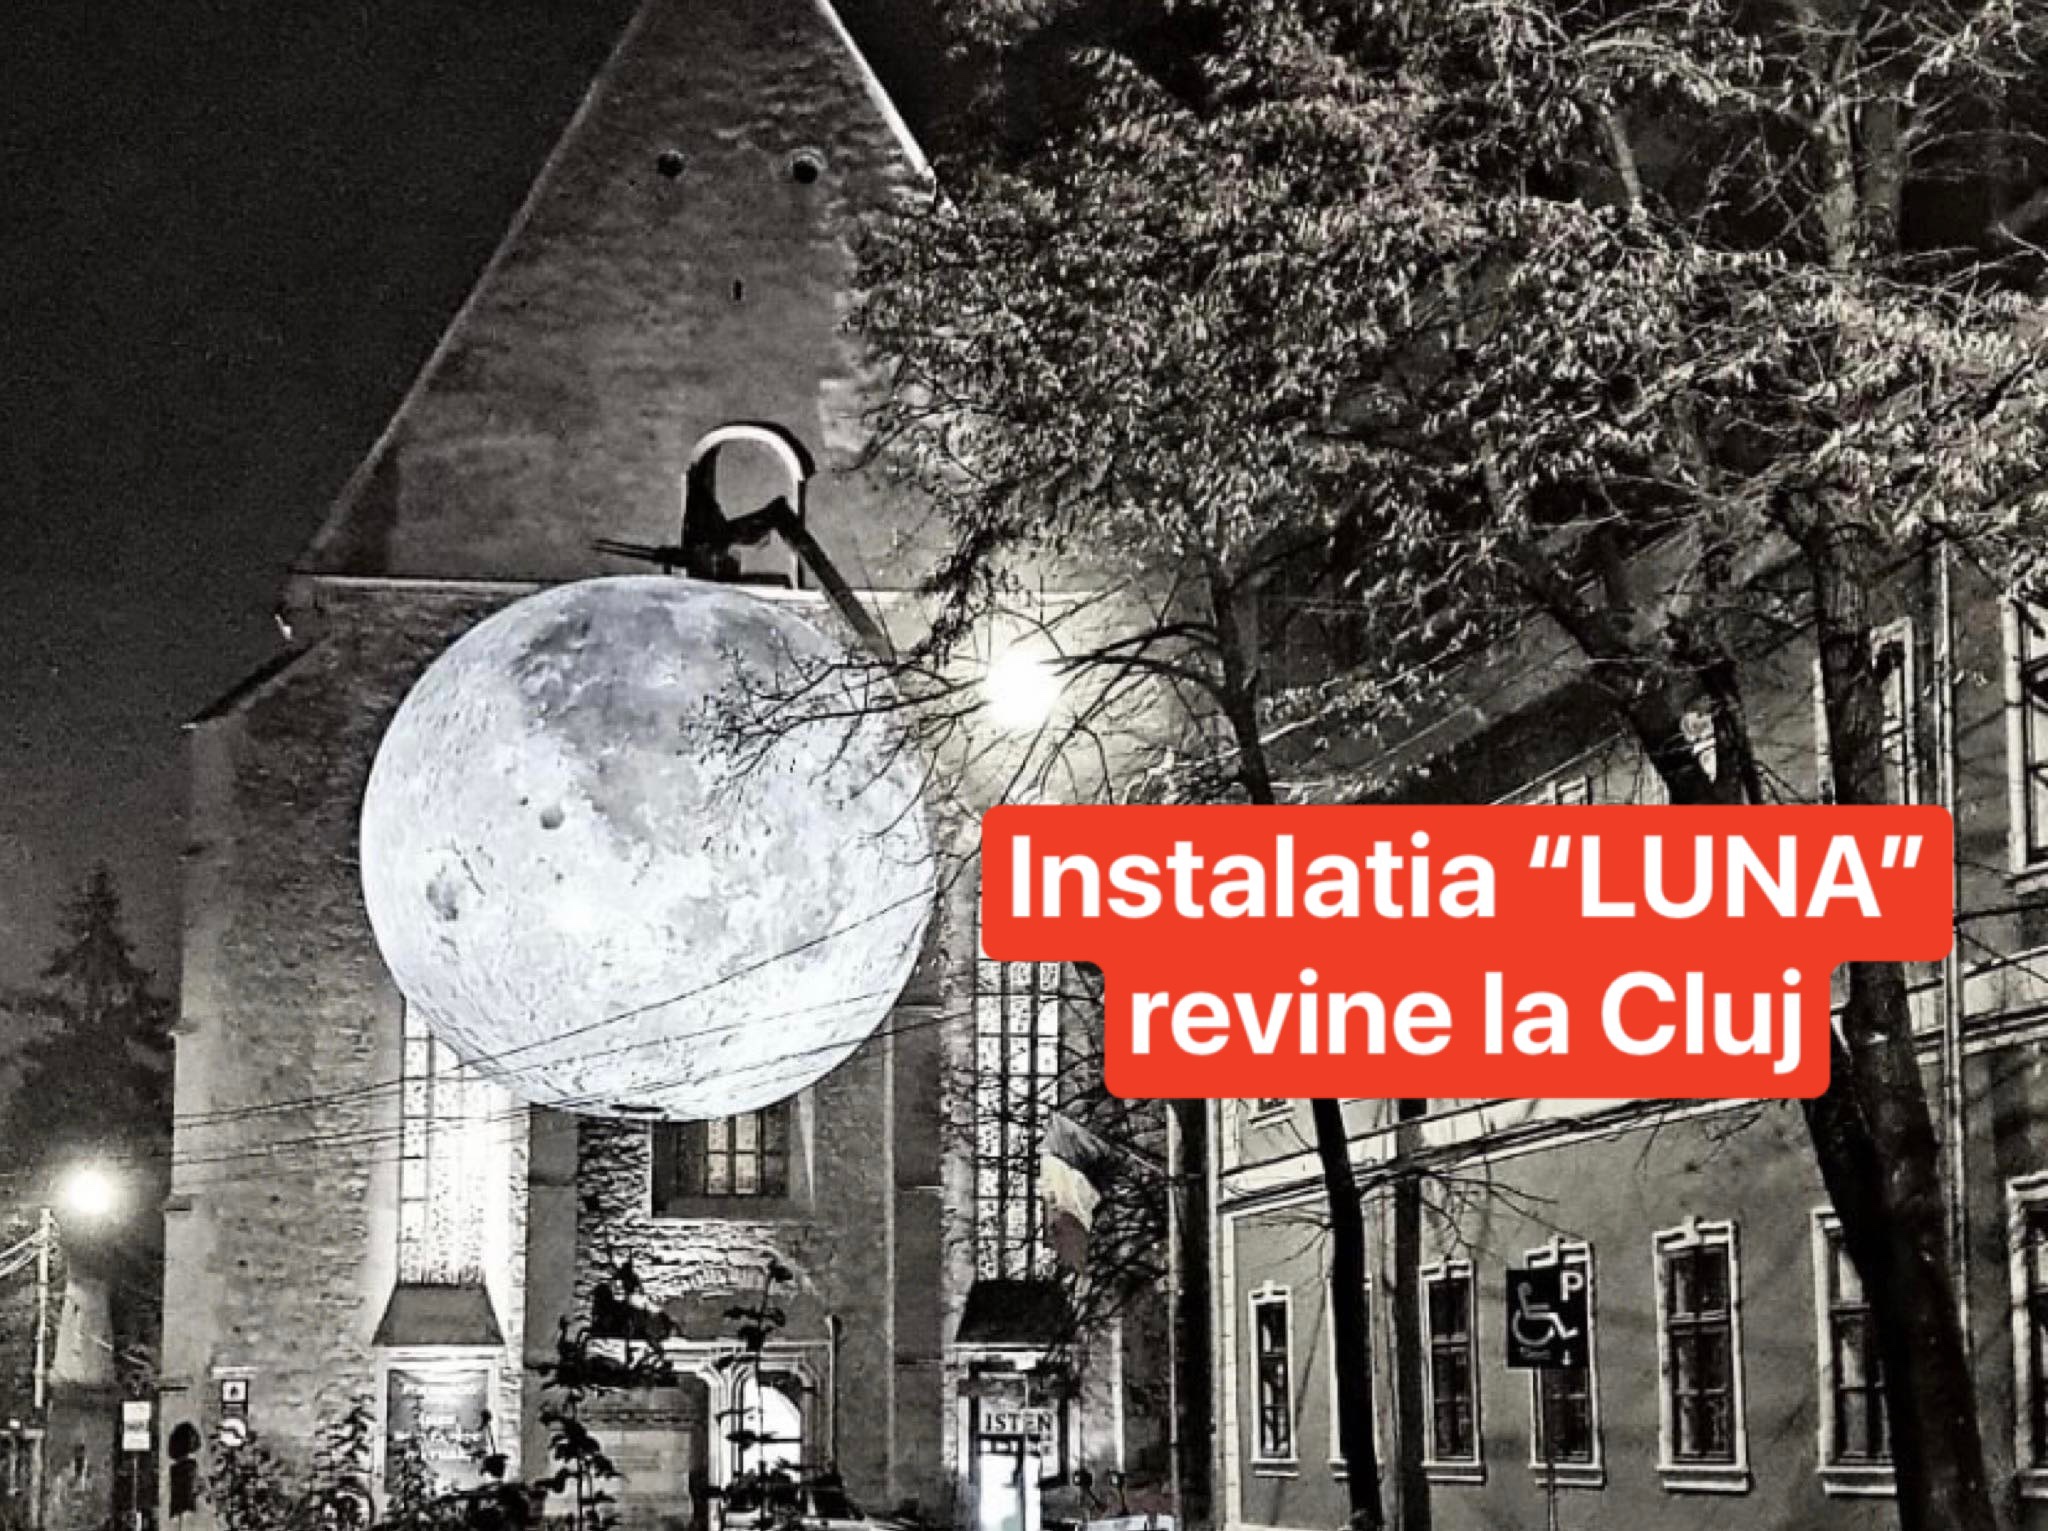 “LUNA” revine într-o expoziție inedită la Cluj-Napoca între 18-27 noiembrie. Unde o poți vedea